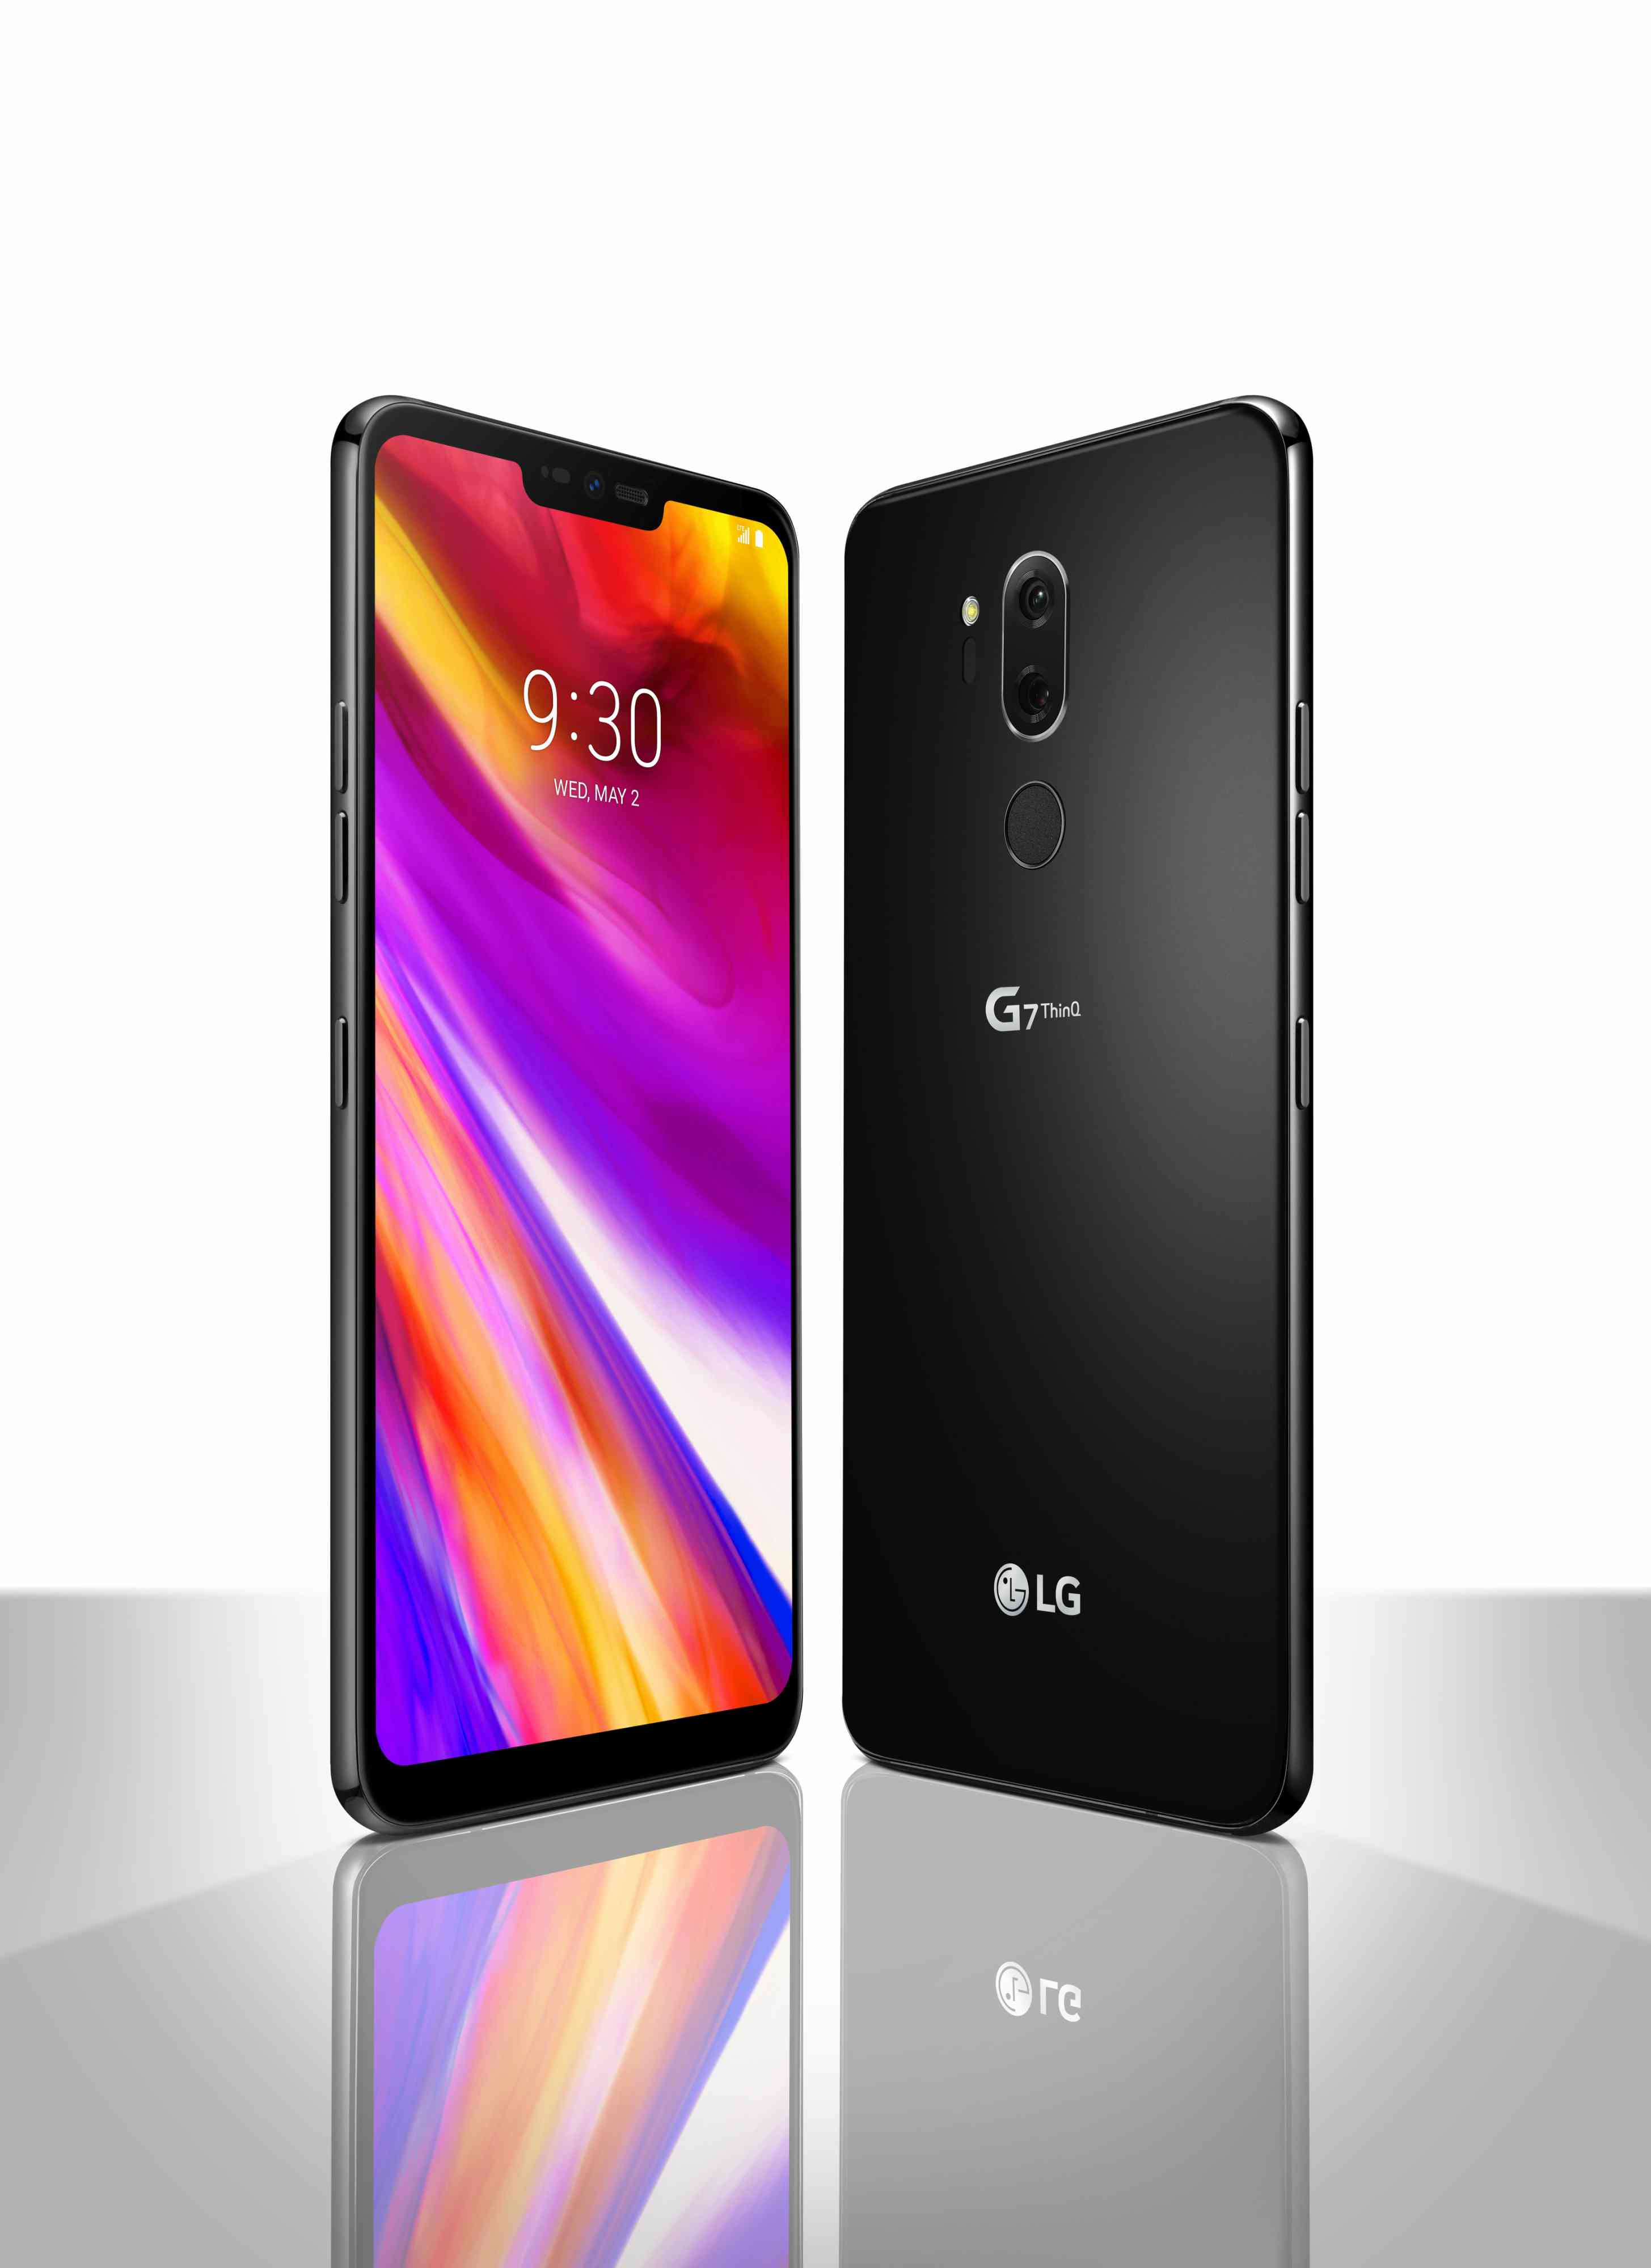 LG G7 THINQ, TERMINAL QUE SUPERA LA REALIDAD TecnoLocura